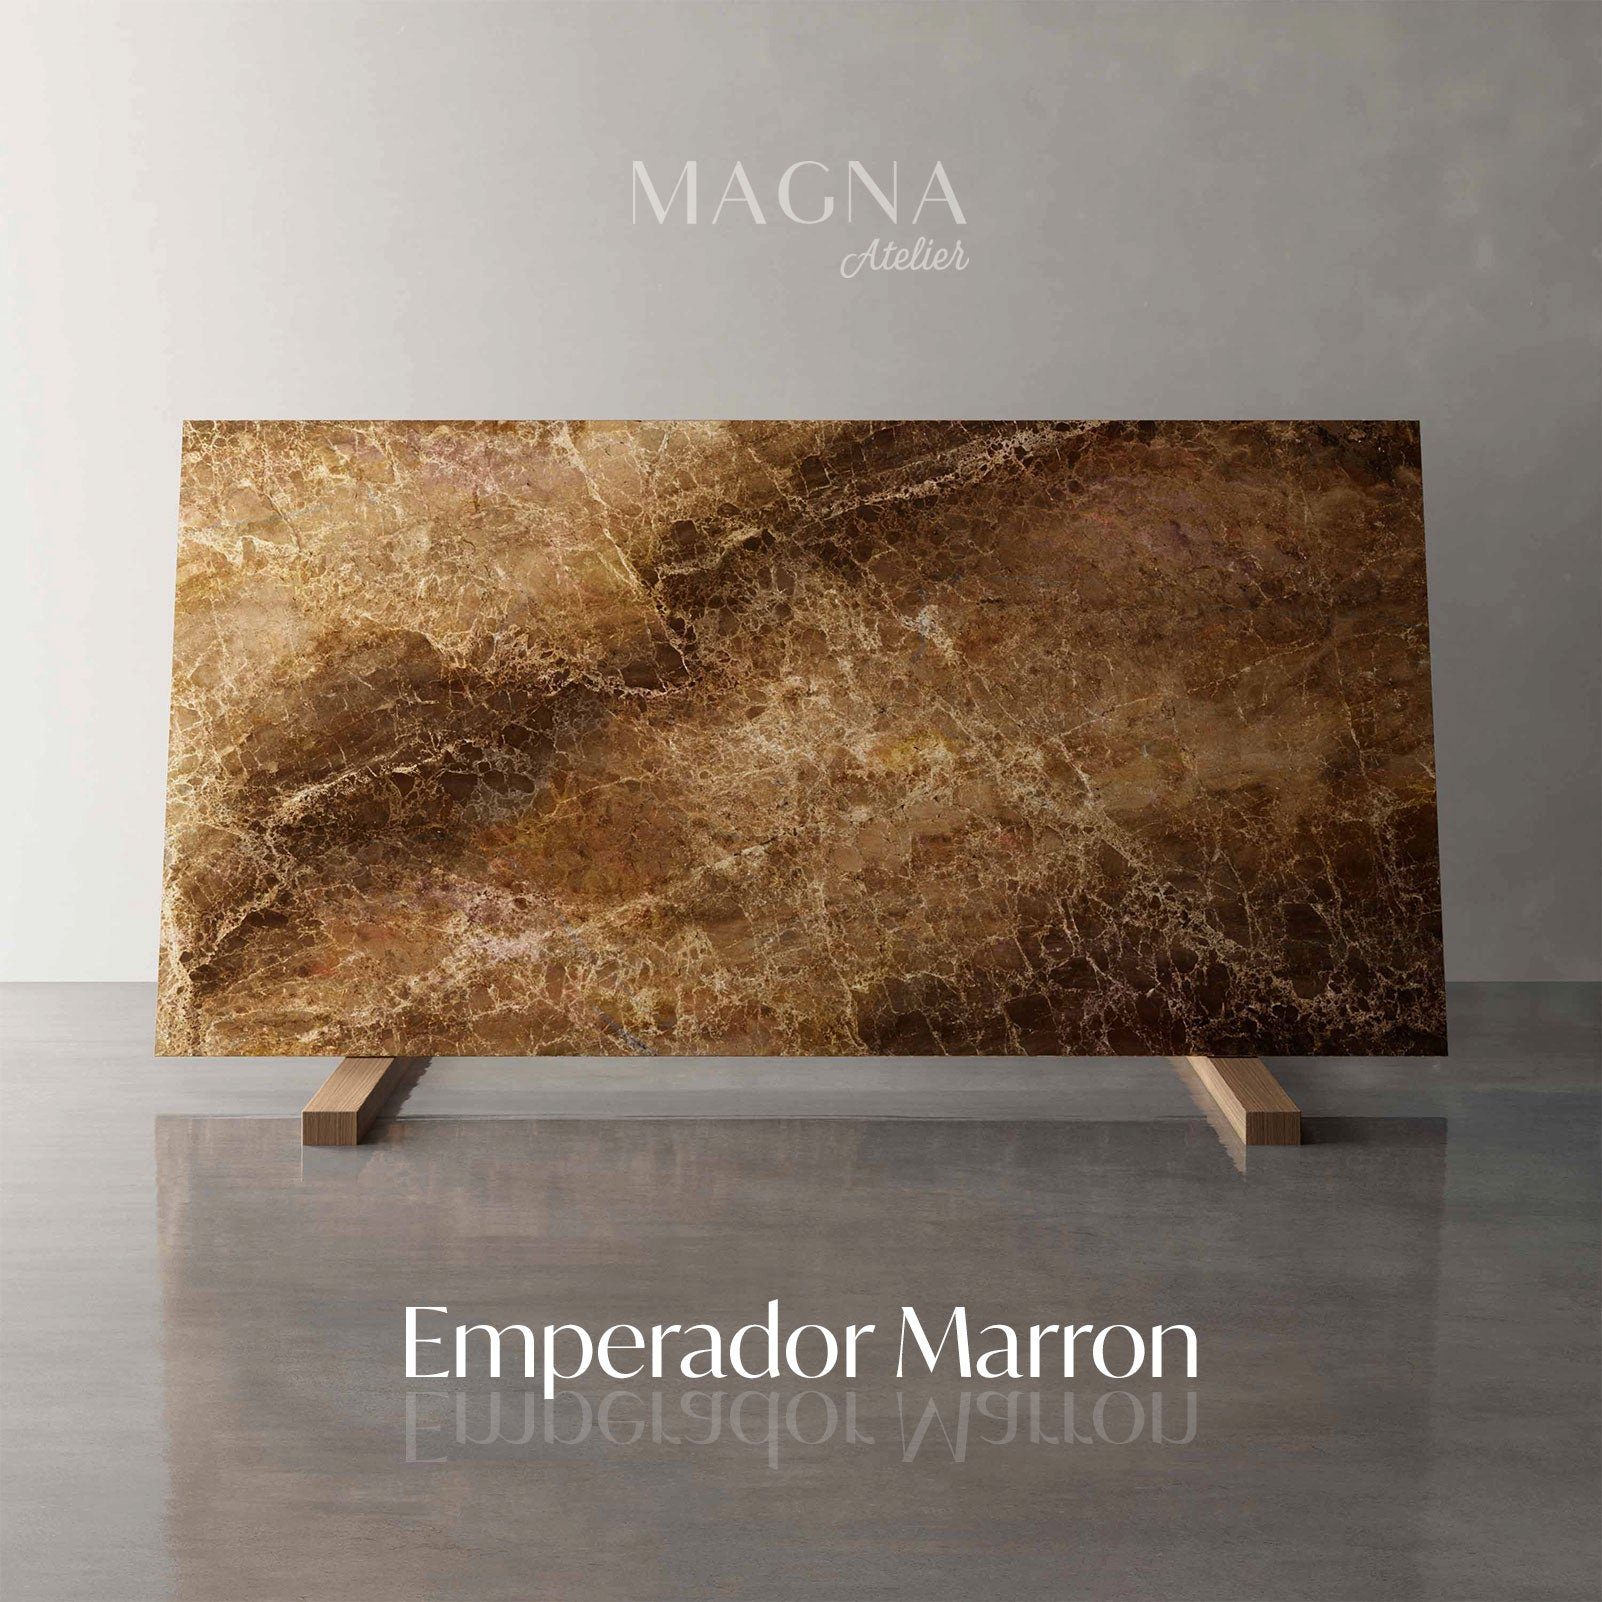 200x100cm mit 160x80cm Esstisch MAGNA Atelier Marron Emperador MARMOR, eckig, ECHTEM & Küchentisch Wohnzimmertisch, SPIDER